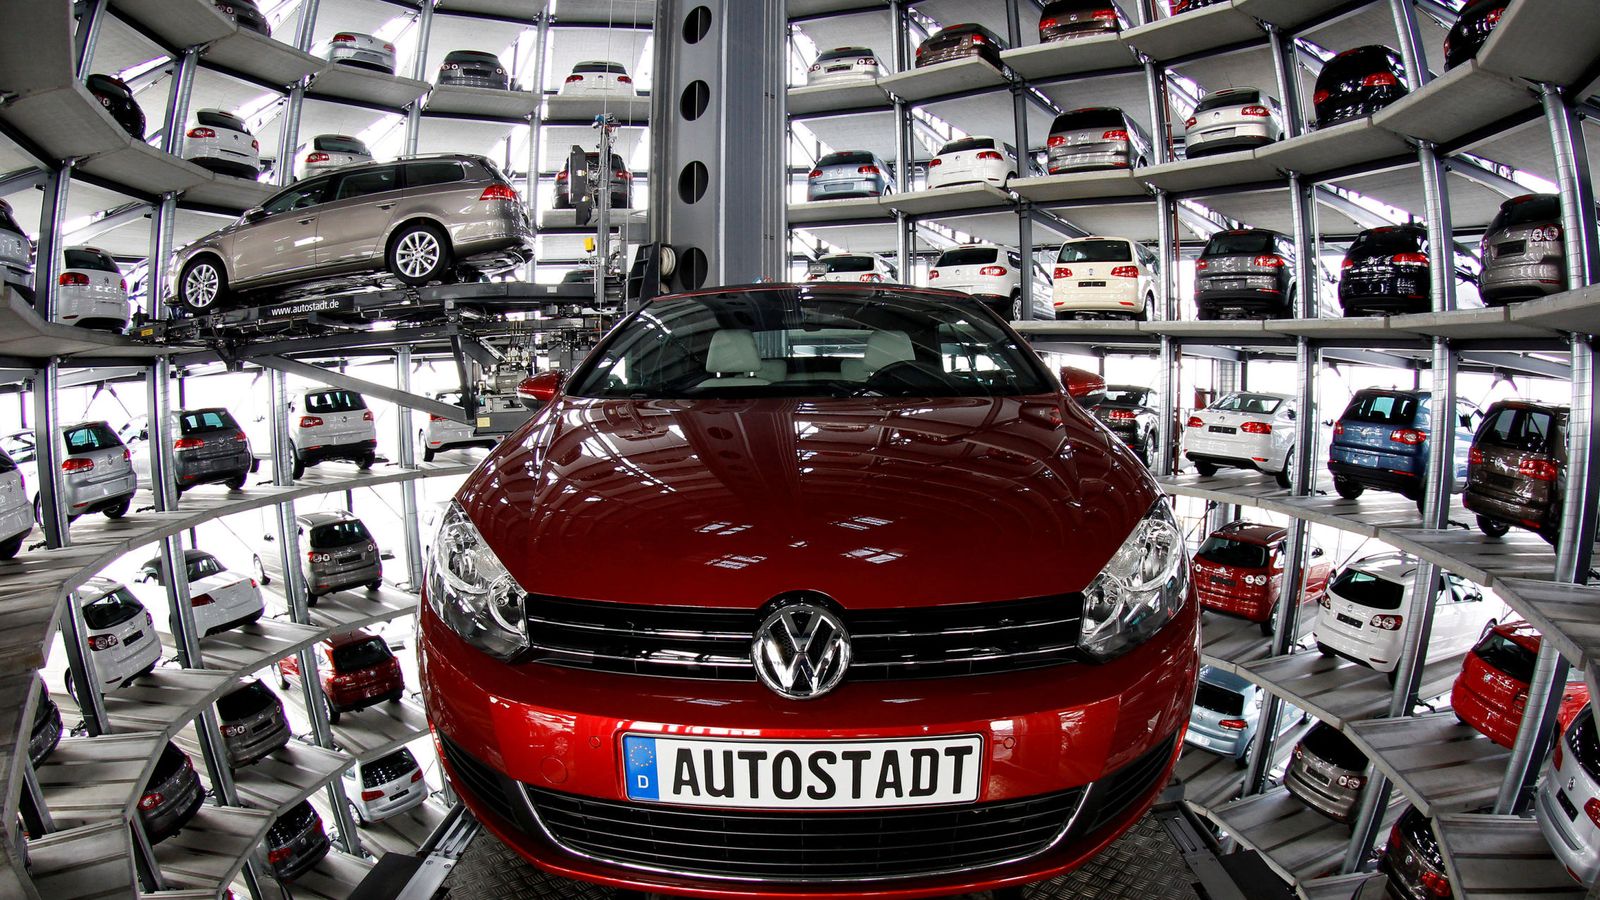 Foto: Parque temático Autostadt, junto a la planta Volkswagen de Wolfsburgo. (Reuters)